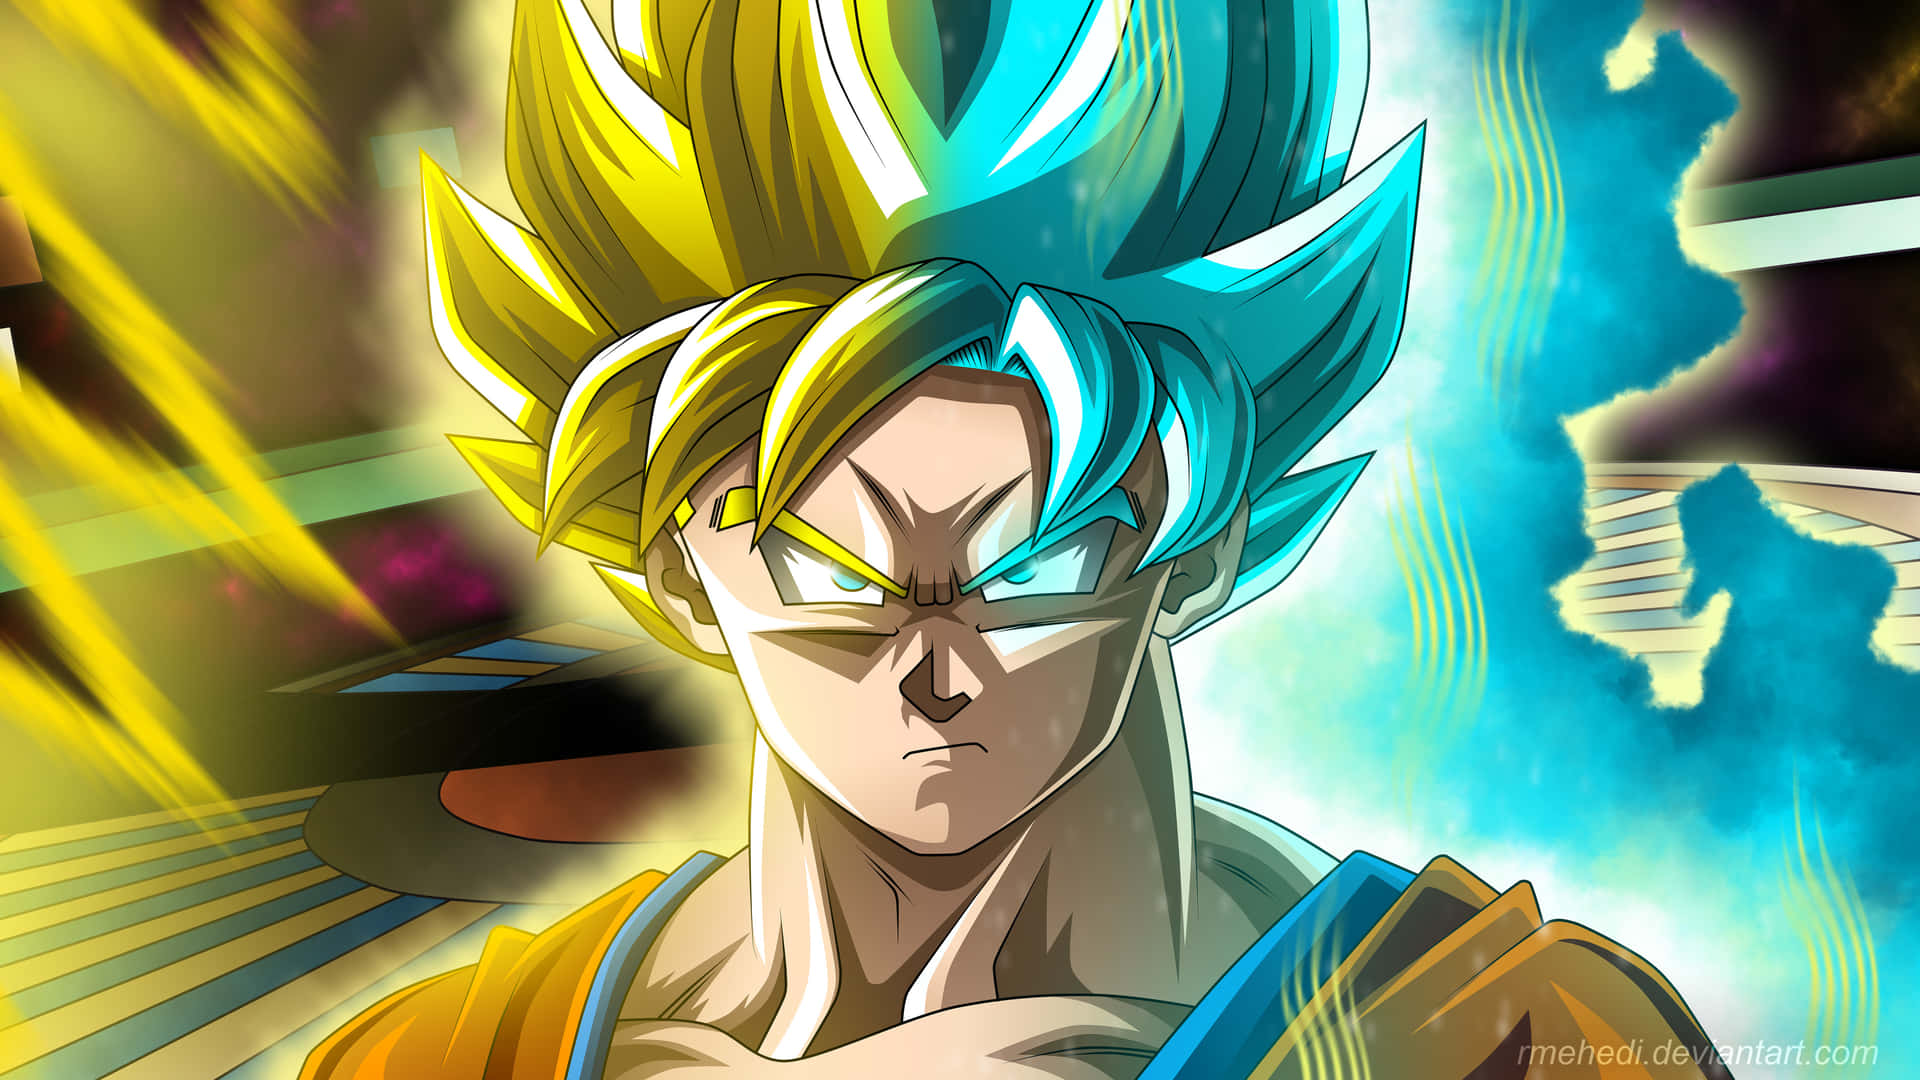 Top 999+ Goku Super Saiyan Wallpapers Full HD, 4K✅Free to Use